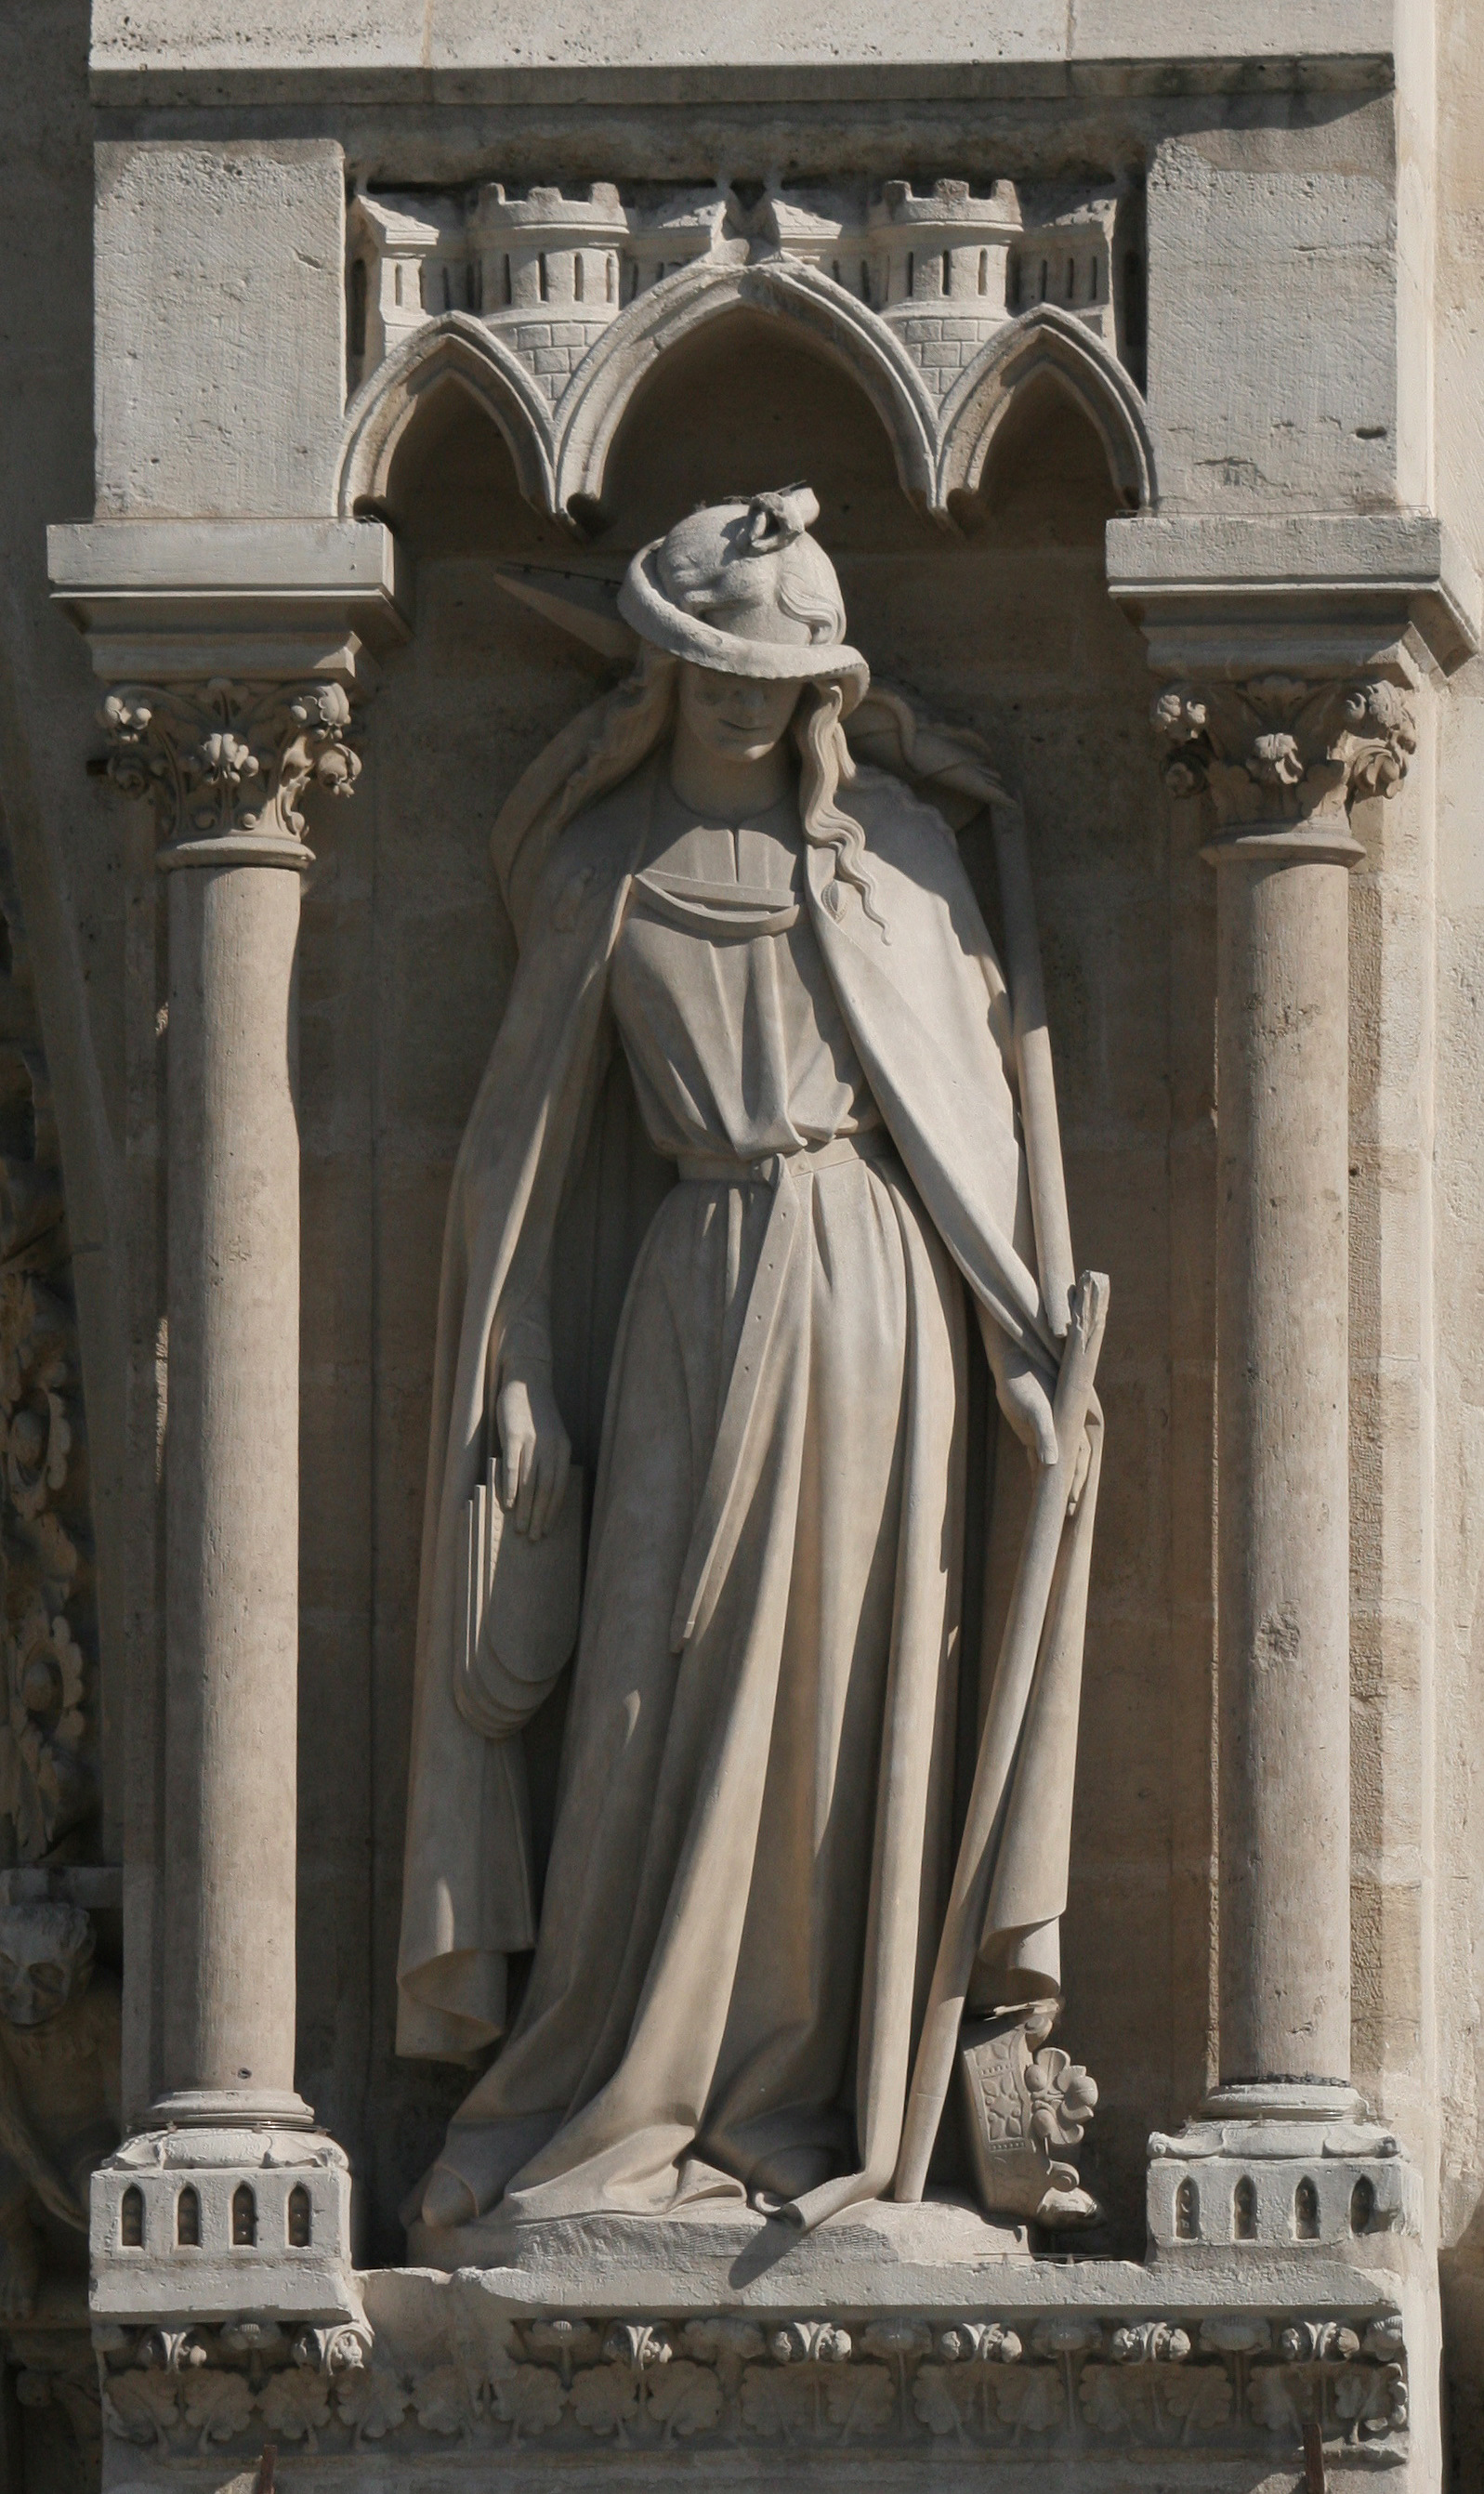 Notre-dame-paris-3rd-statue-west-side.jpg